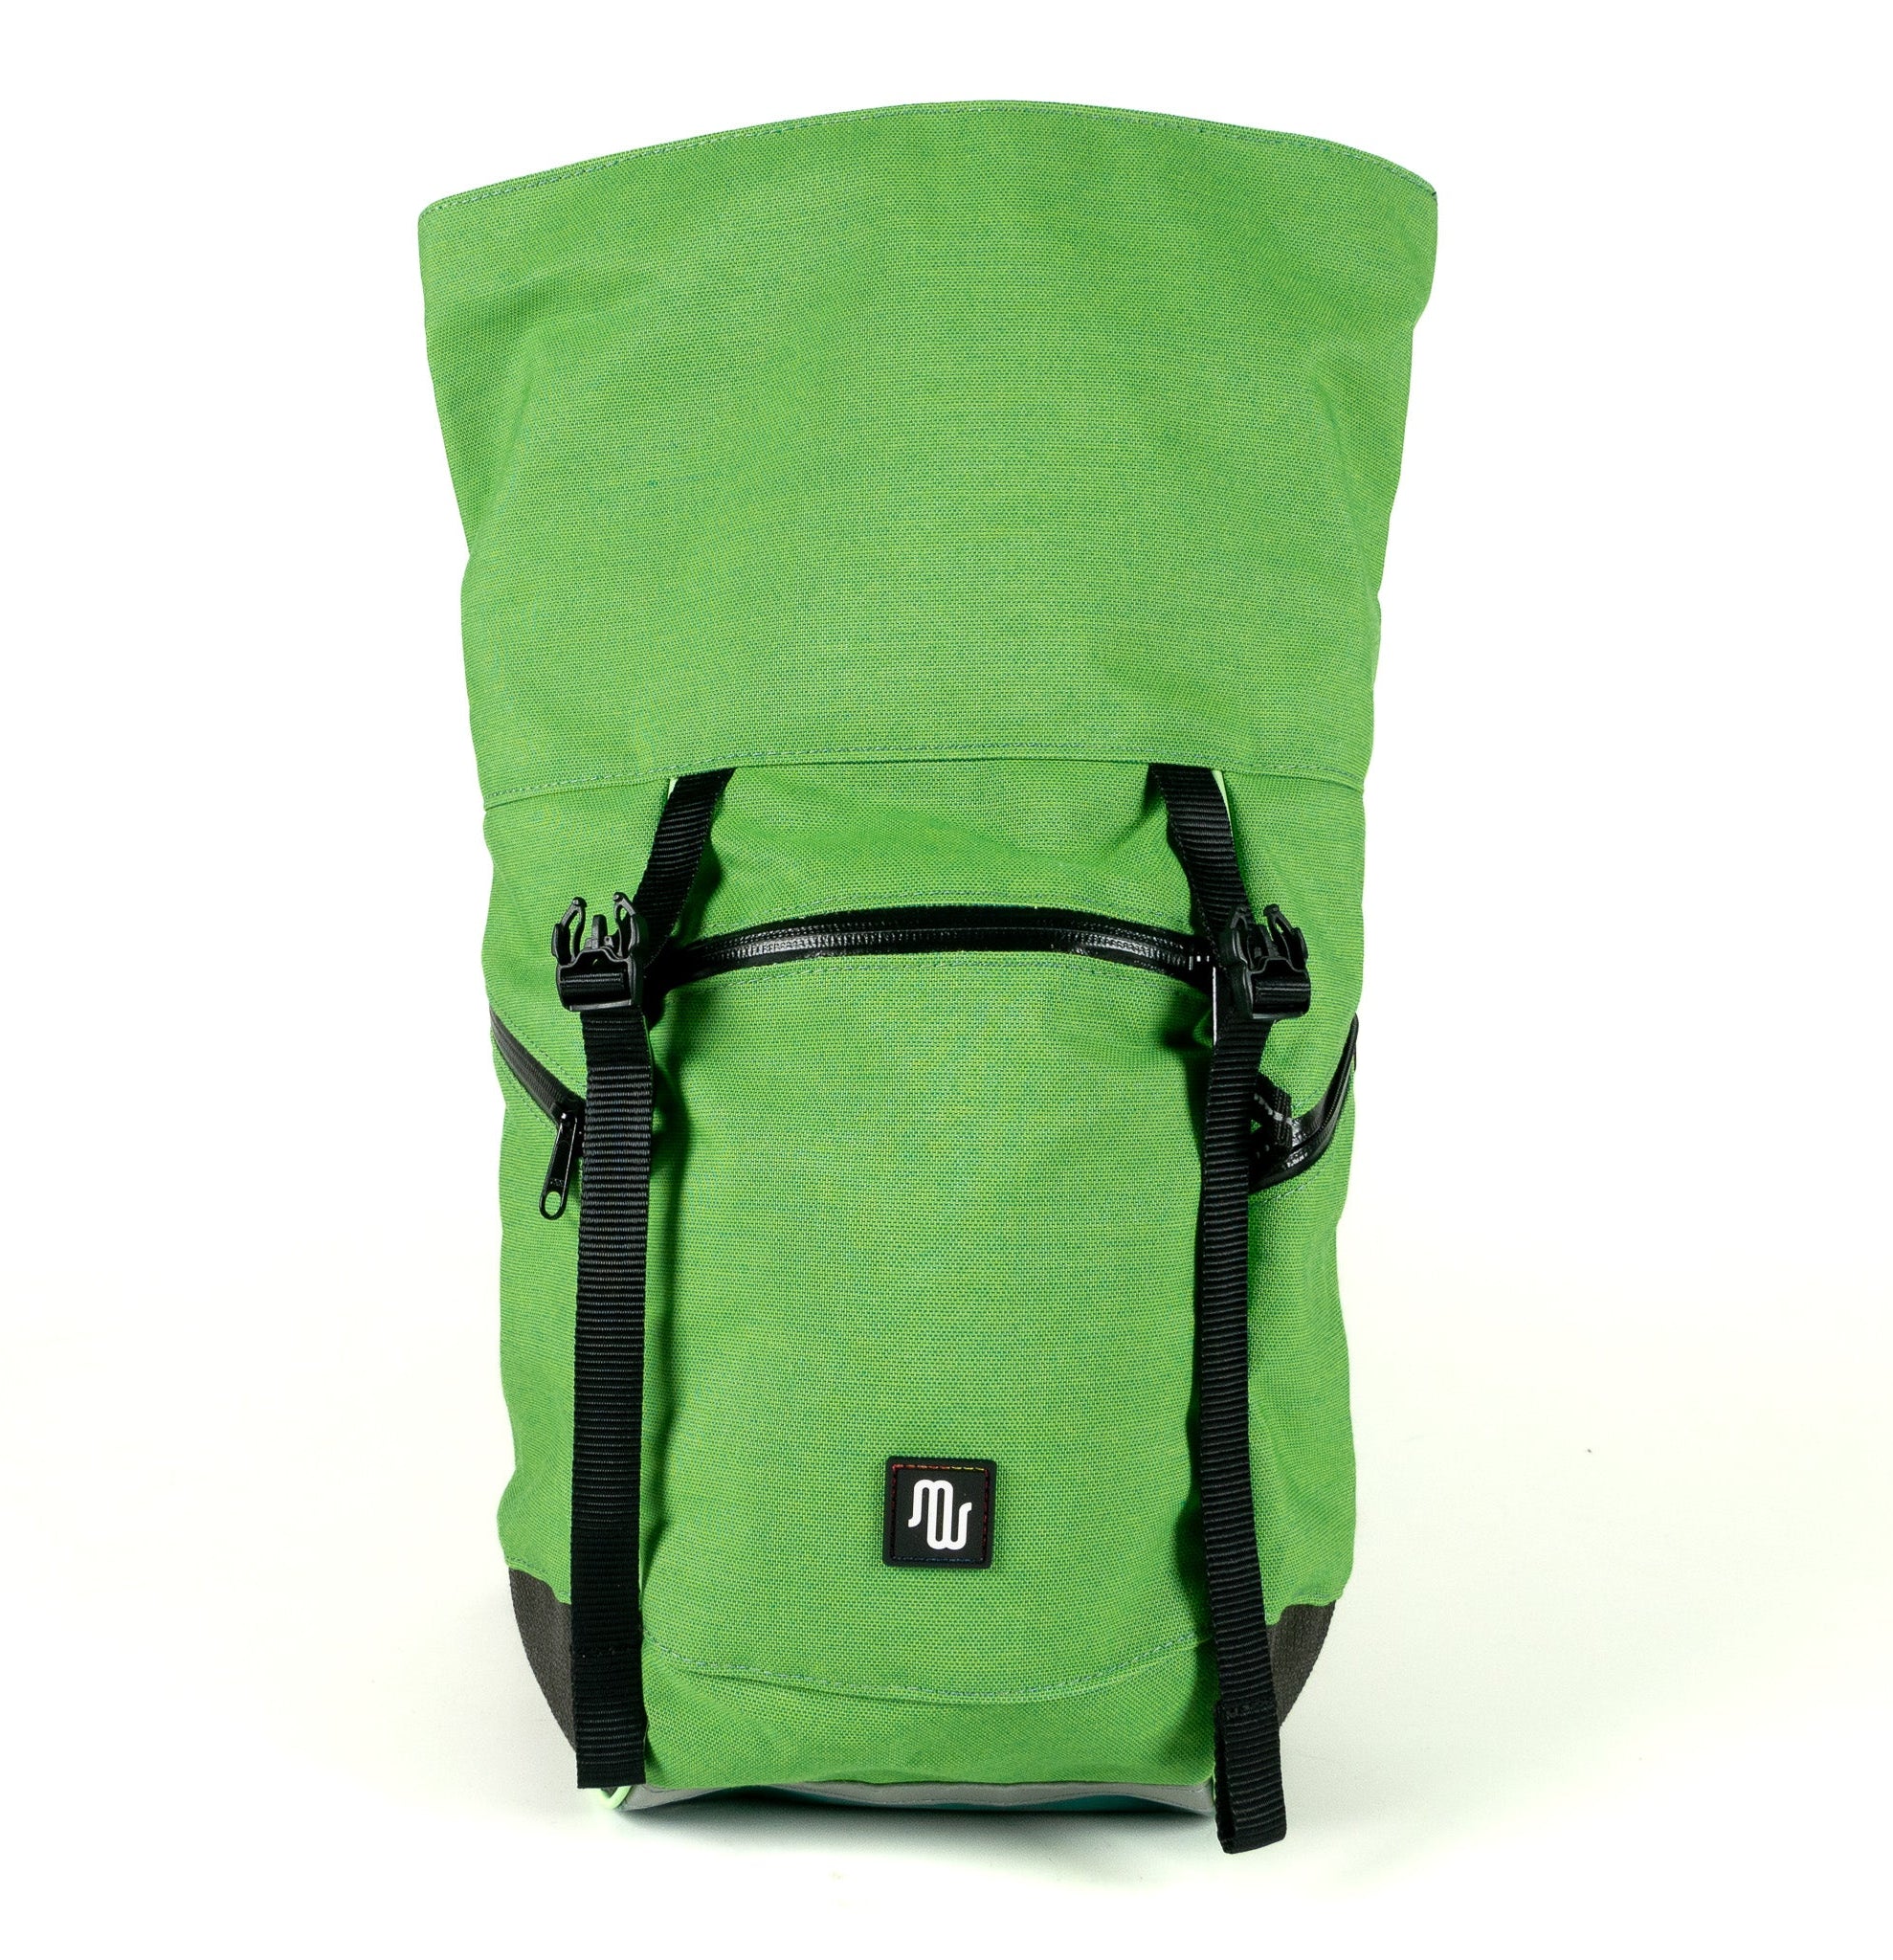 BUDDY No. 120 - Backpacks - medencebag